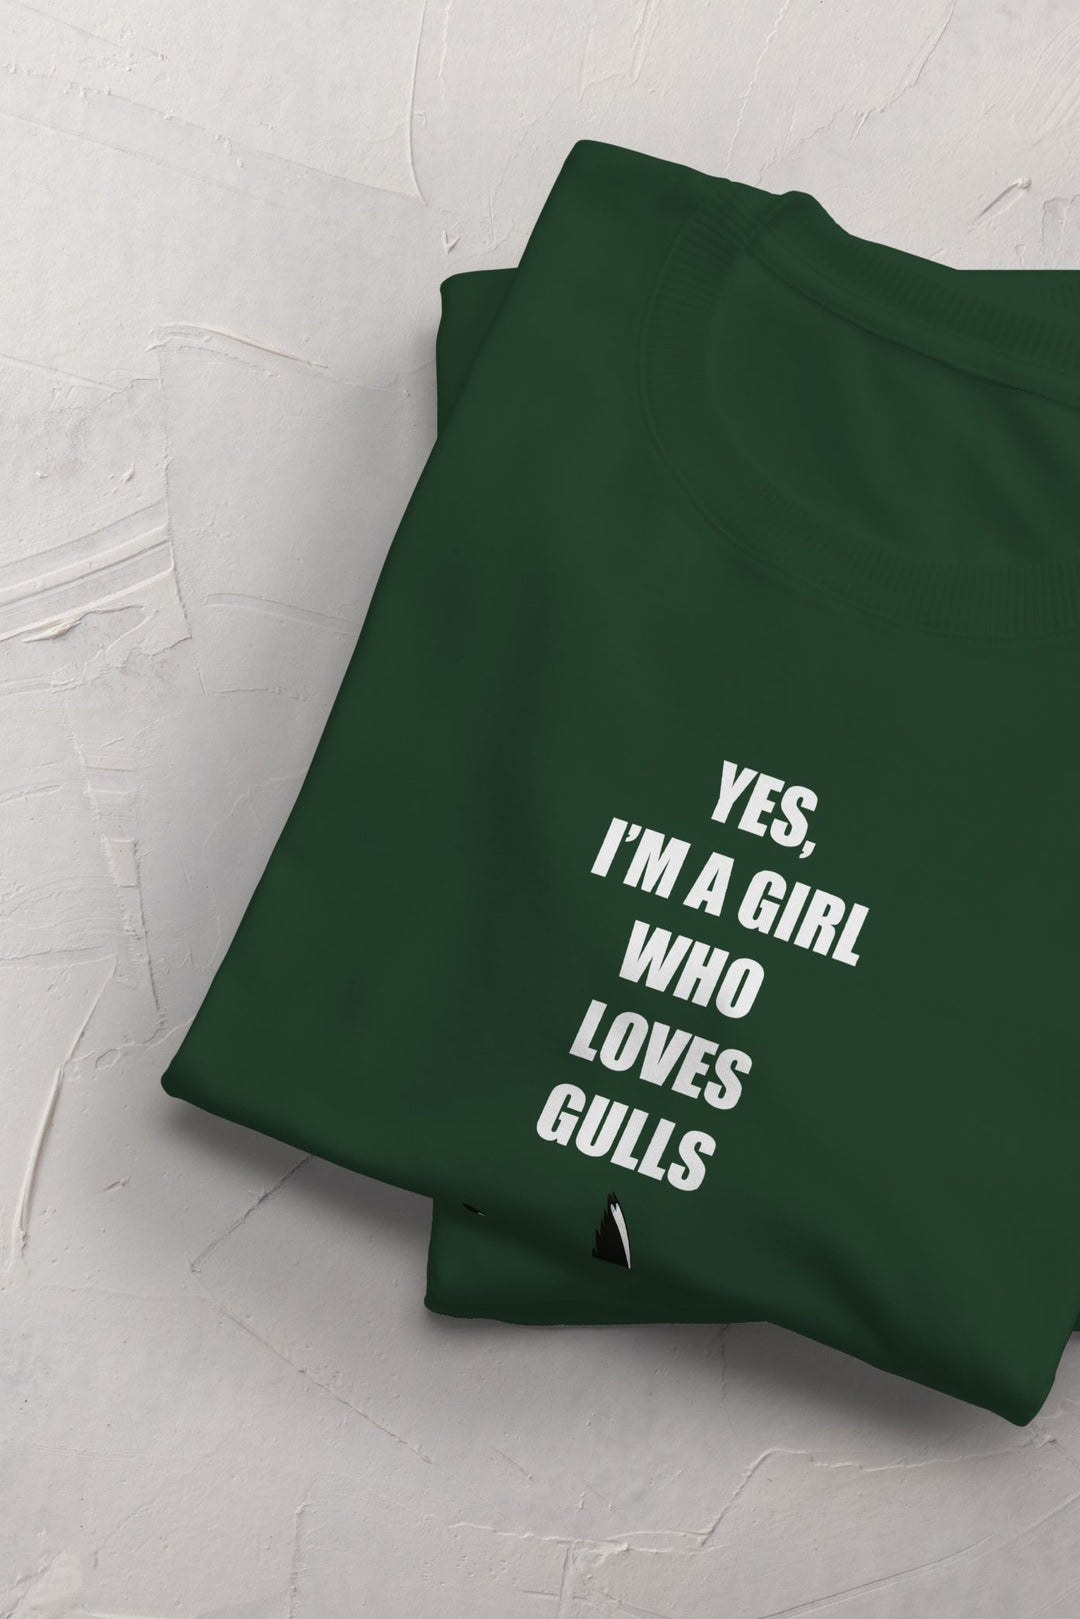 Girl Who Loves Gulls T-shirt